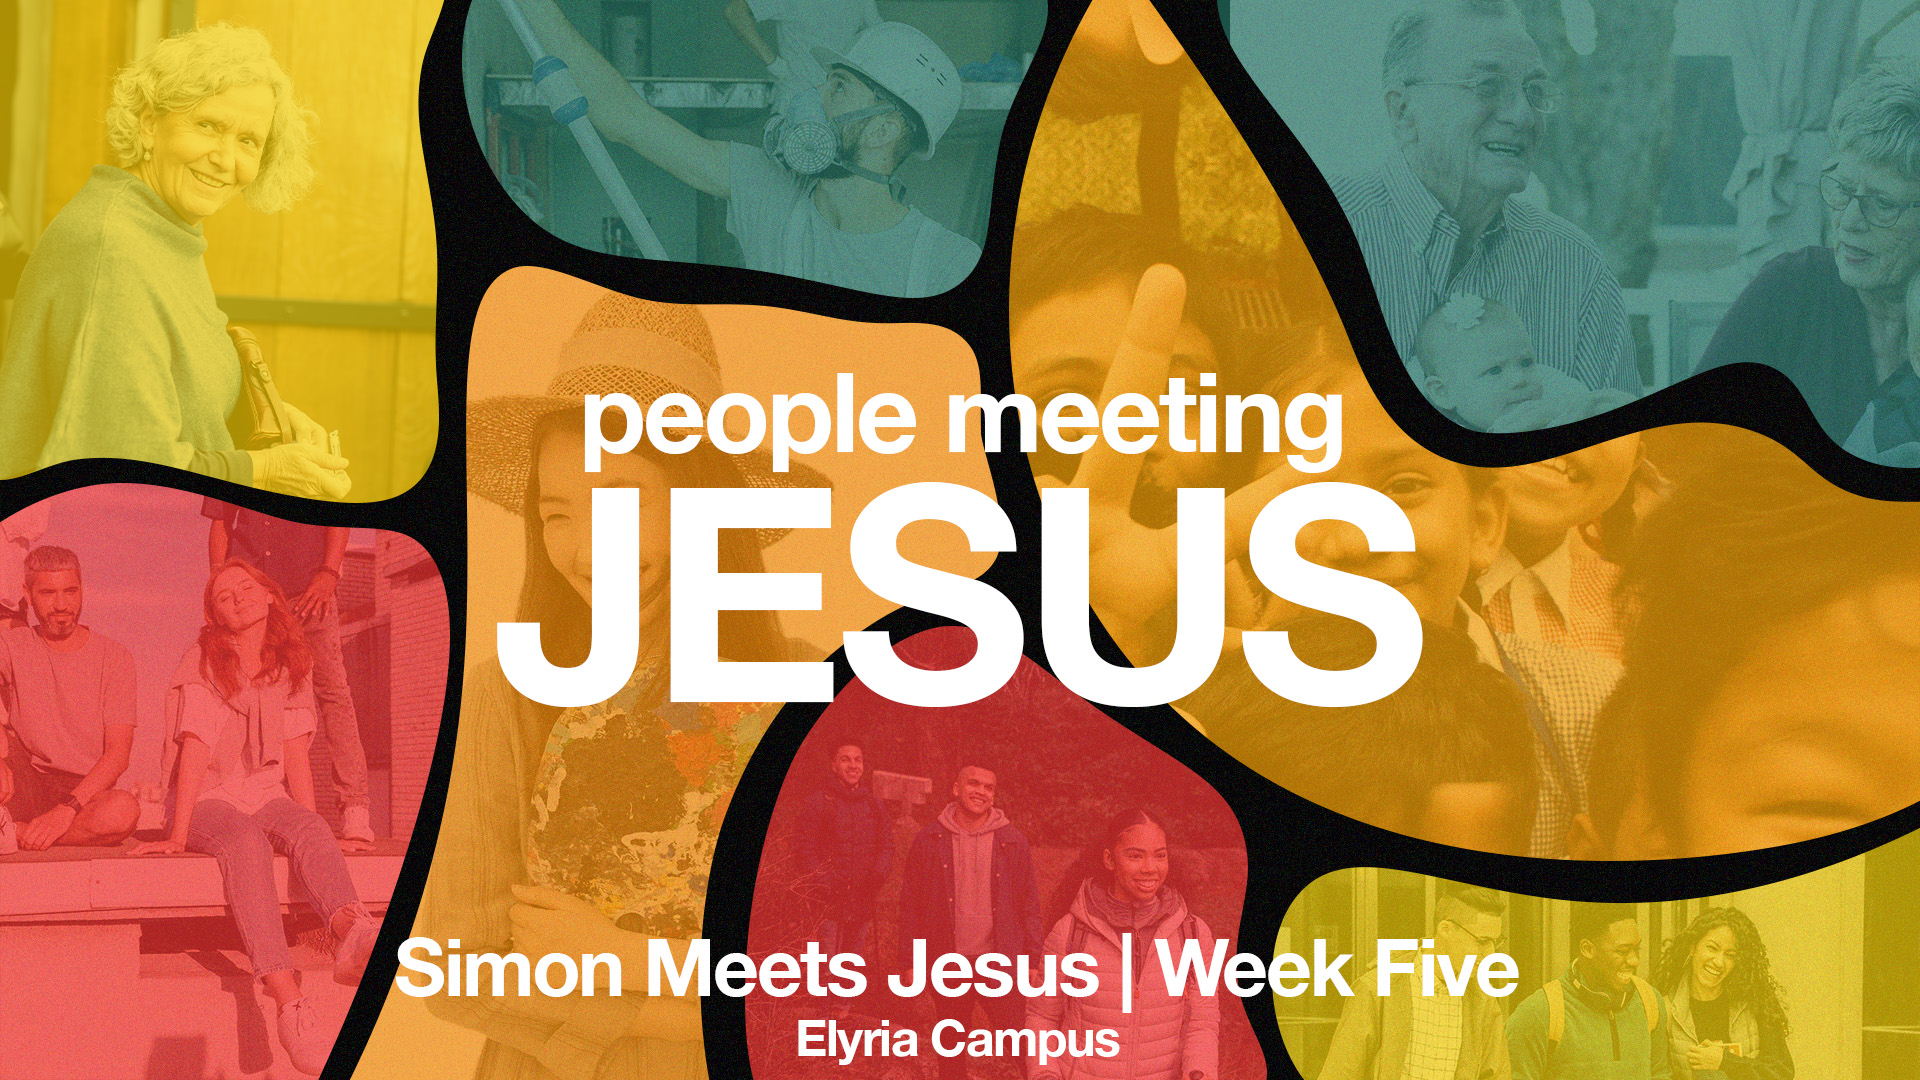 Simon Meets Jesus - Week Five | Elyria Campus